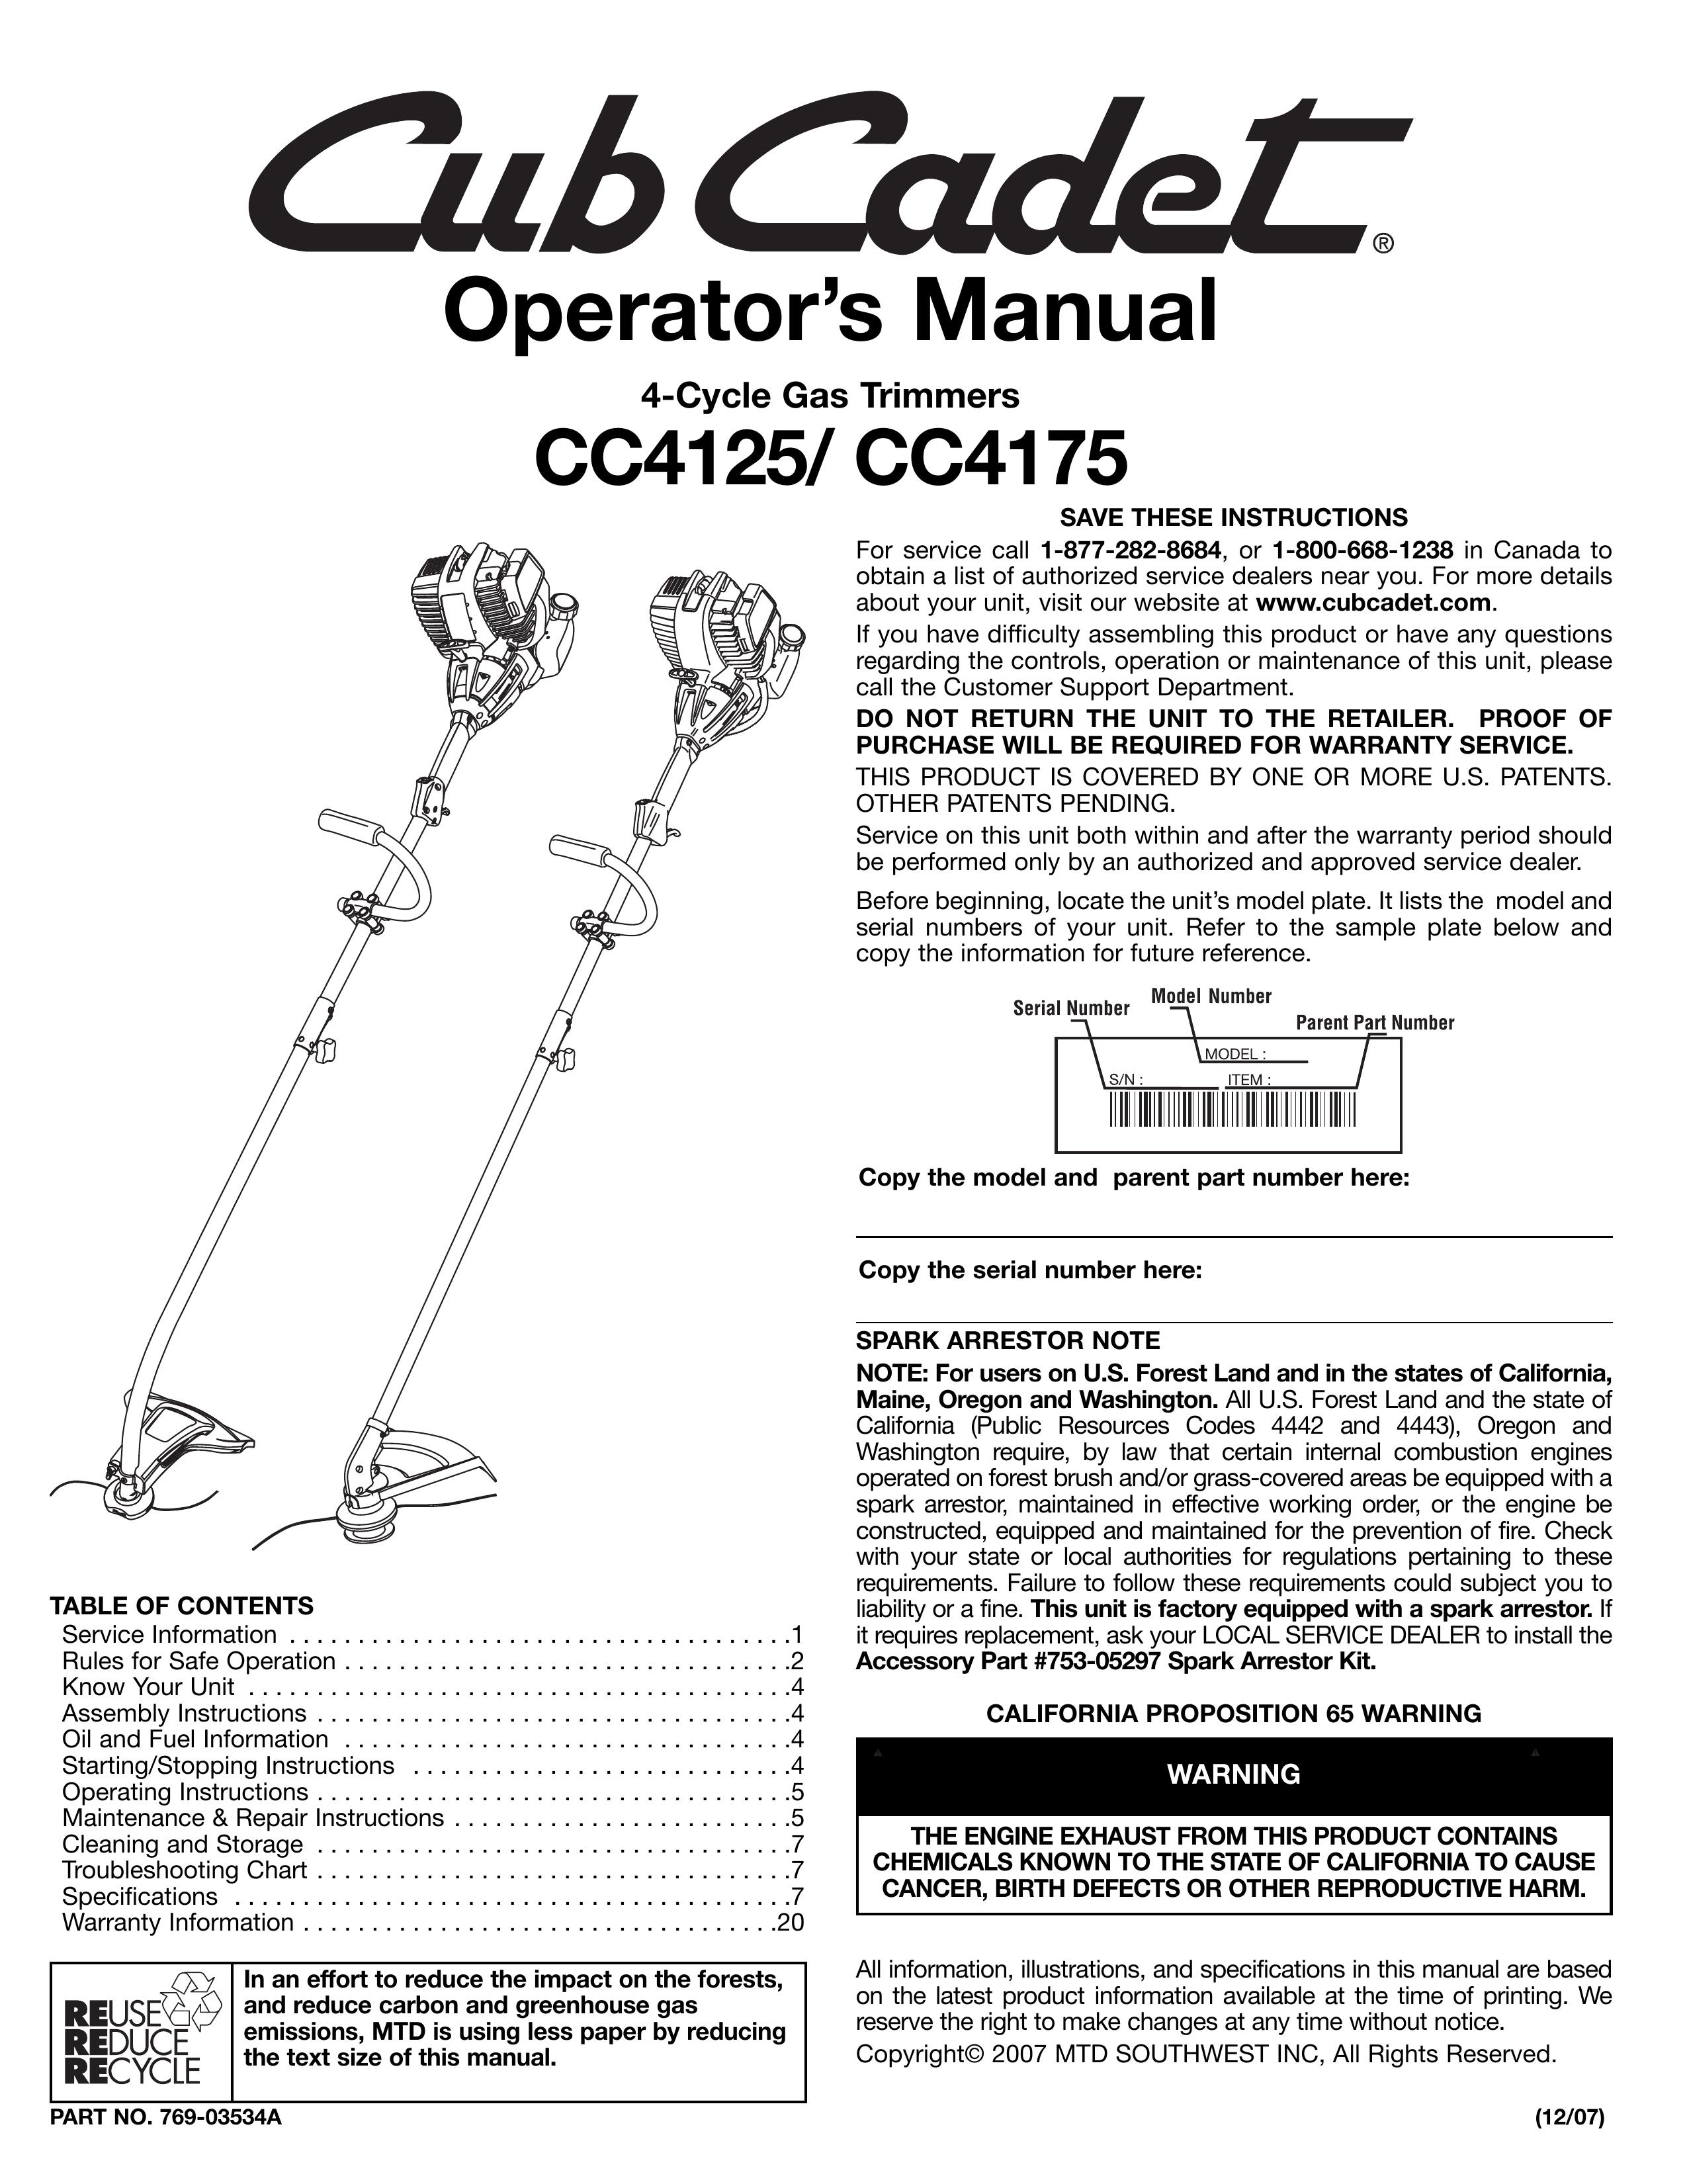 Cub Cadet CC4175 Trimmer User Manual